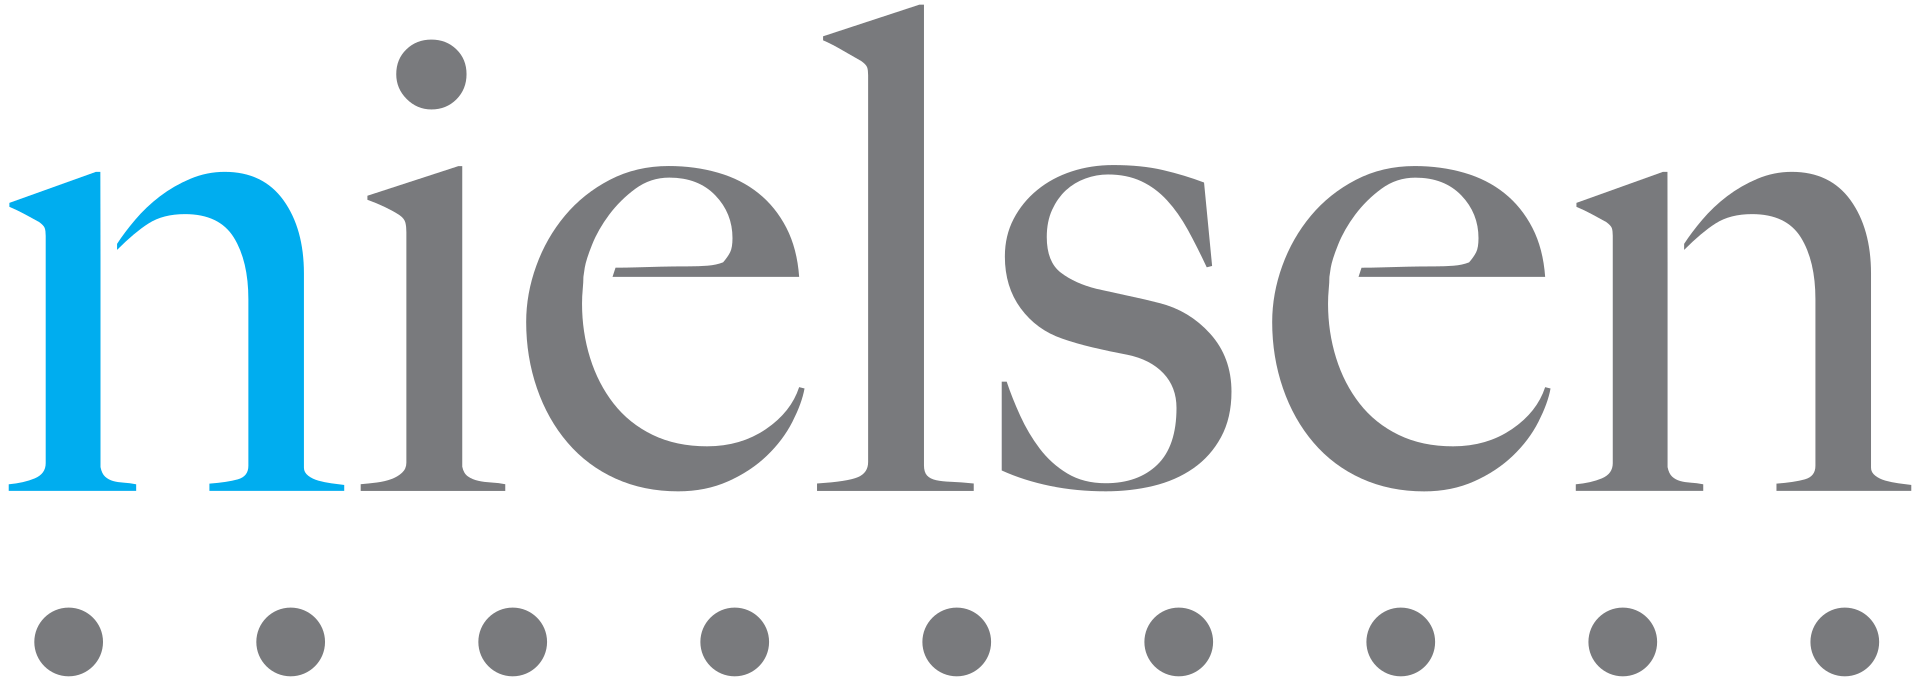 Nielsen Holdings PLC